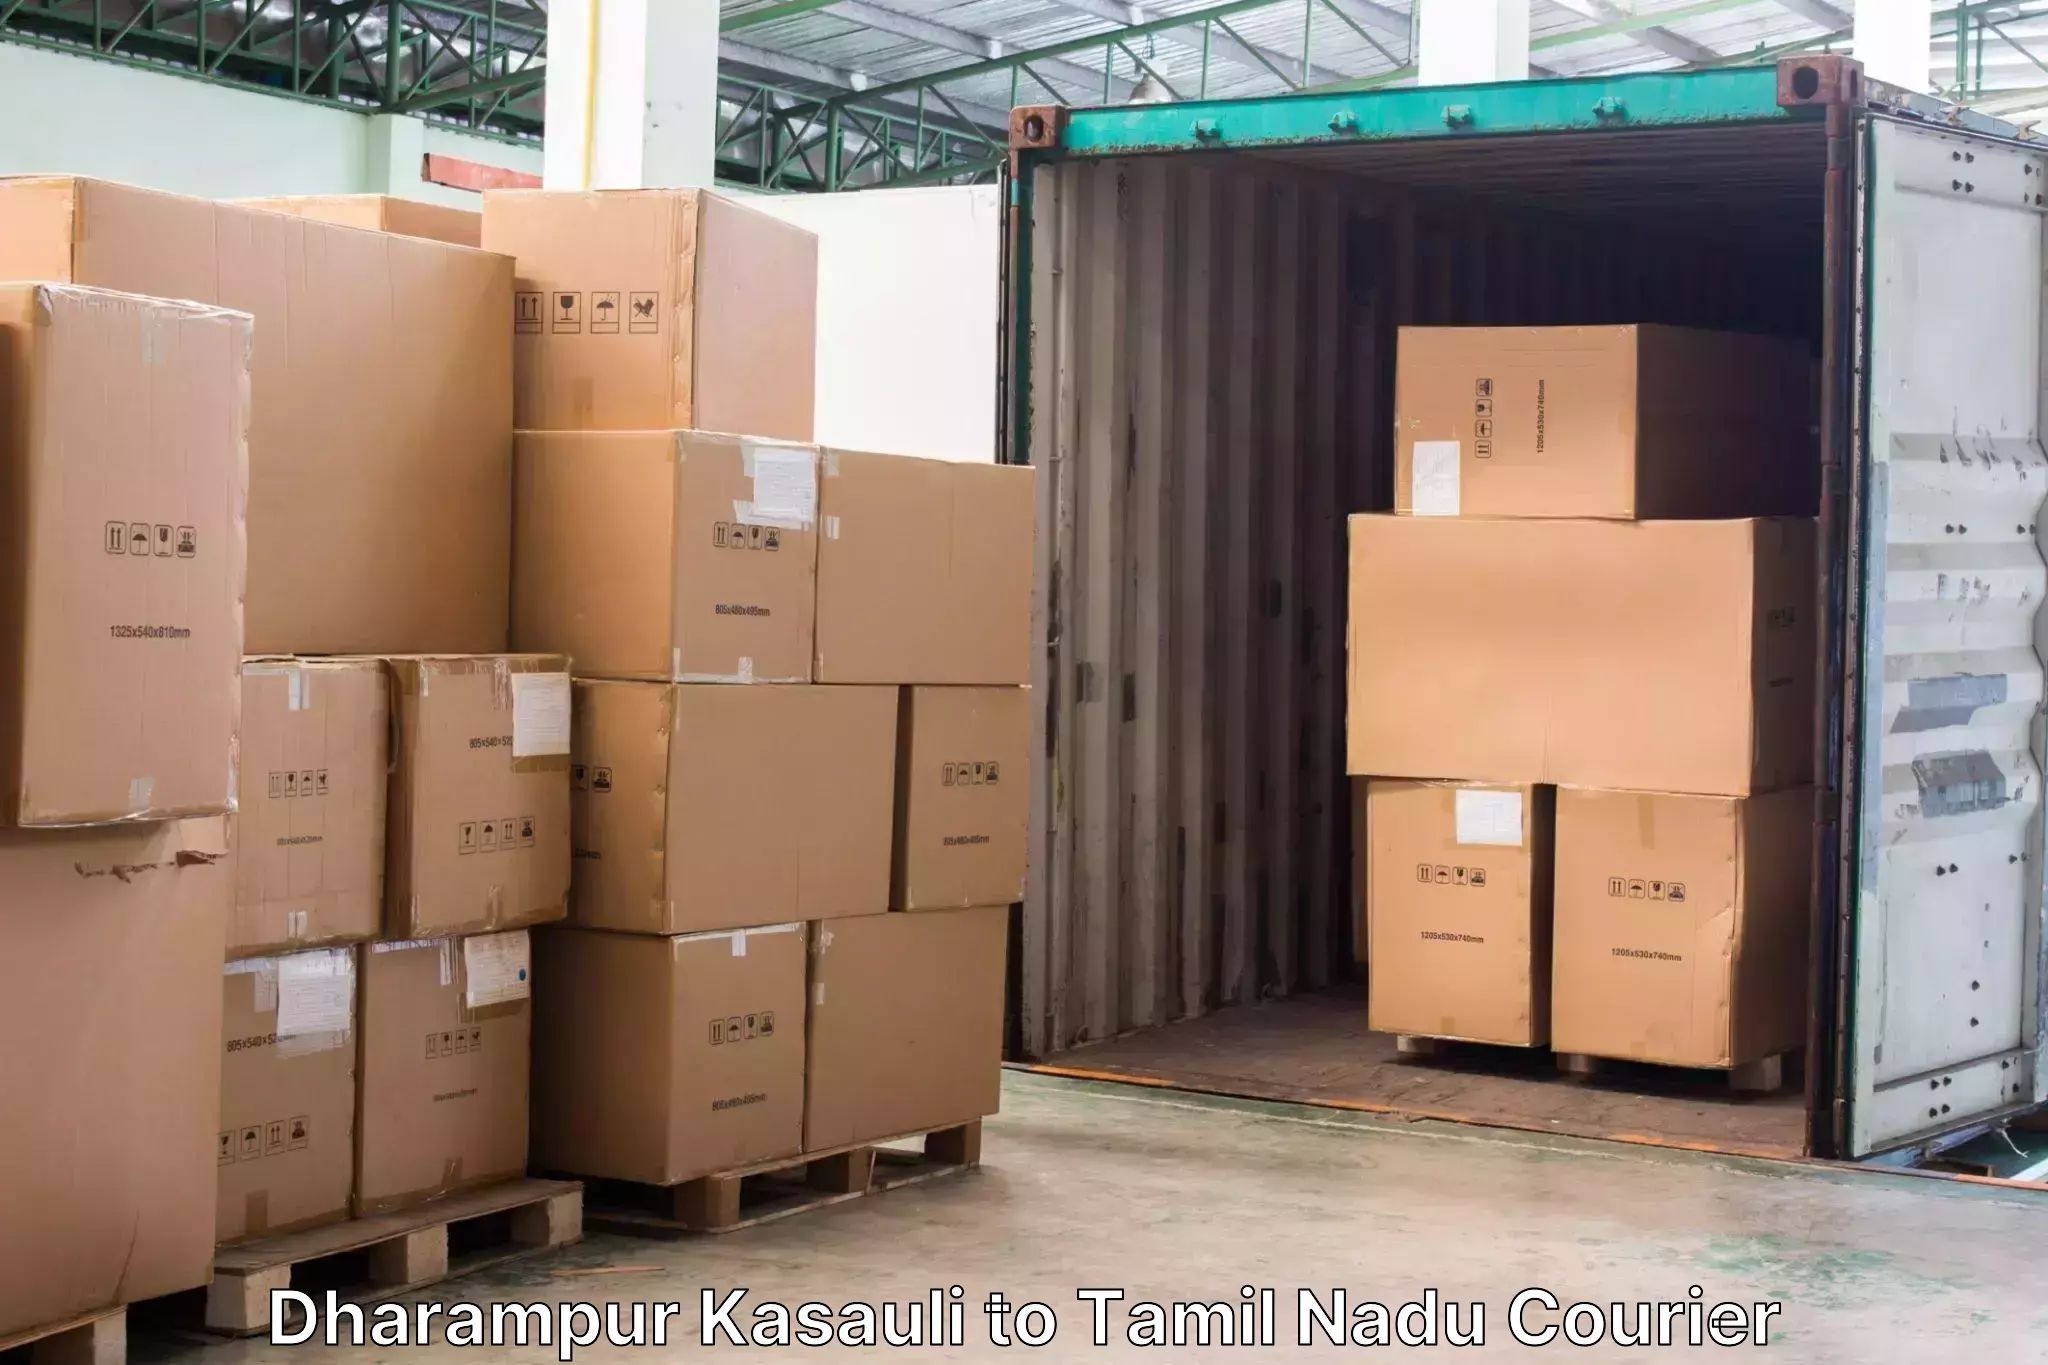 Luggage transport company Dharampur Kasauli to Ponnamaravathi